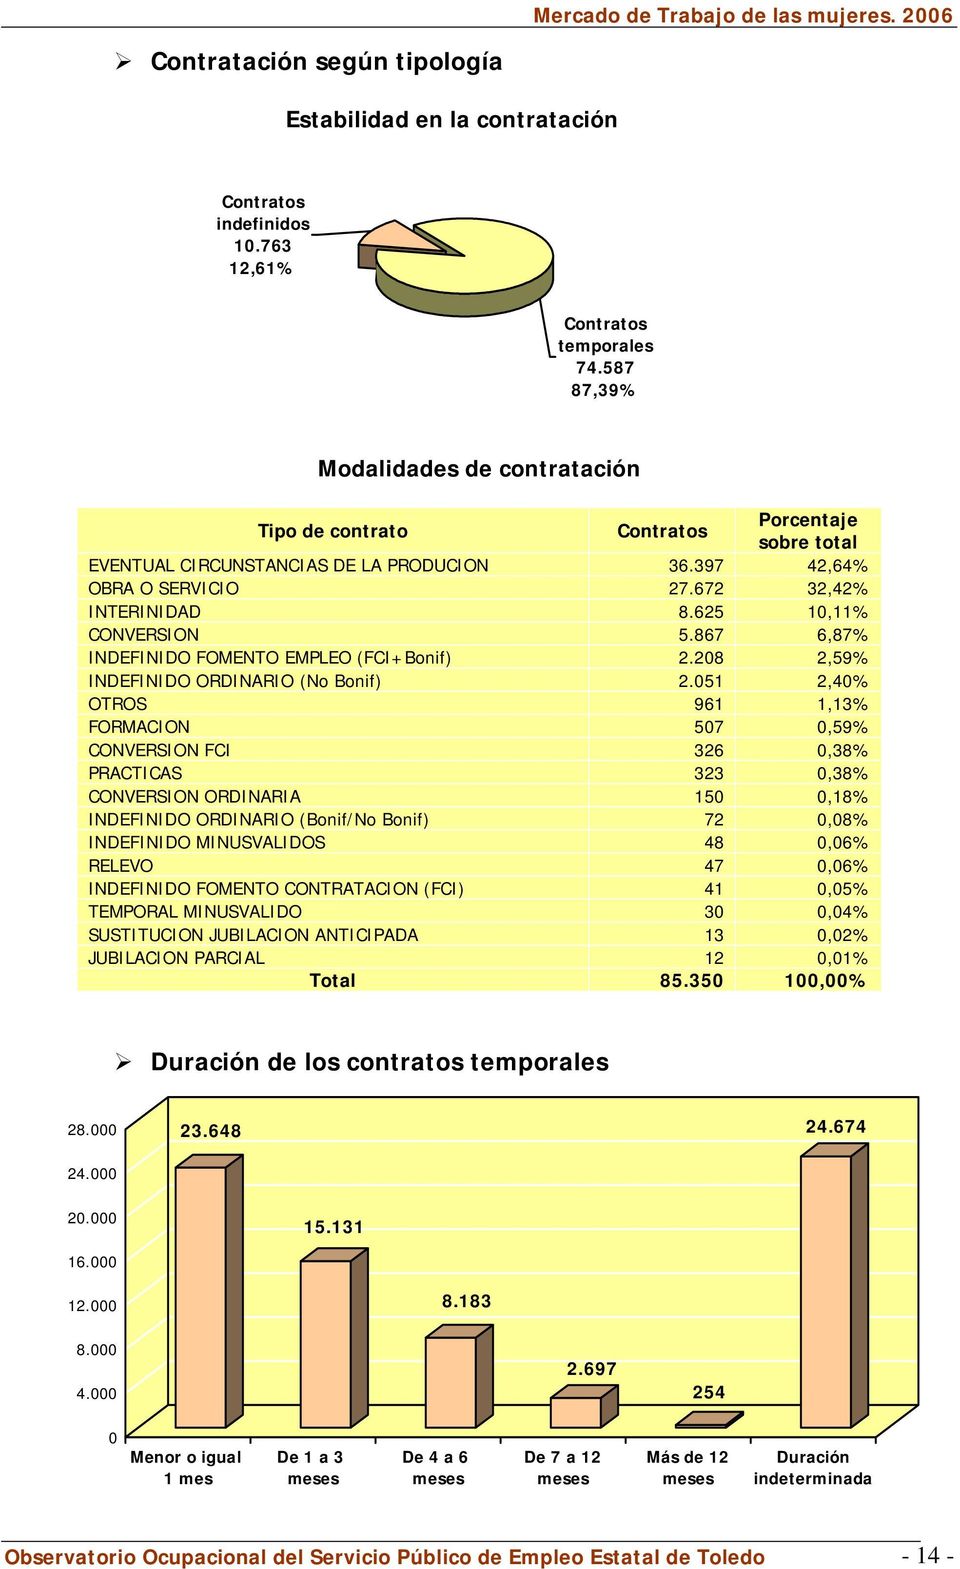 625 10,11% CONVERSION 5.867 6,87% INDEFINIDO FOMENTO EMPLEO (FCI+Bonif) 2.208 2,59% INDEFINIDO ORDINARIO (No Bonif) 2.